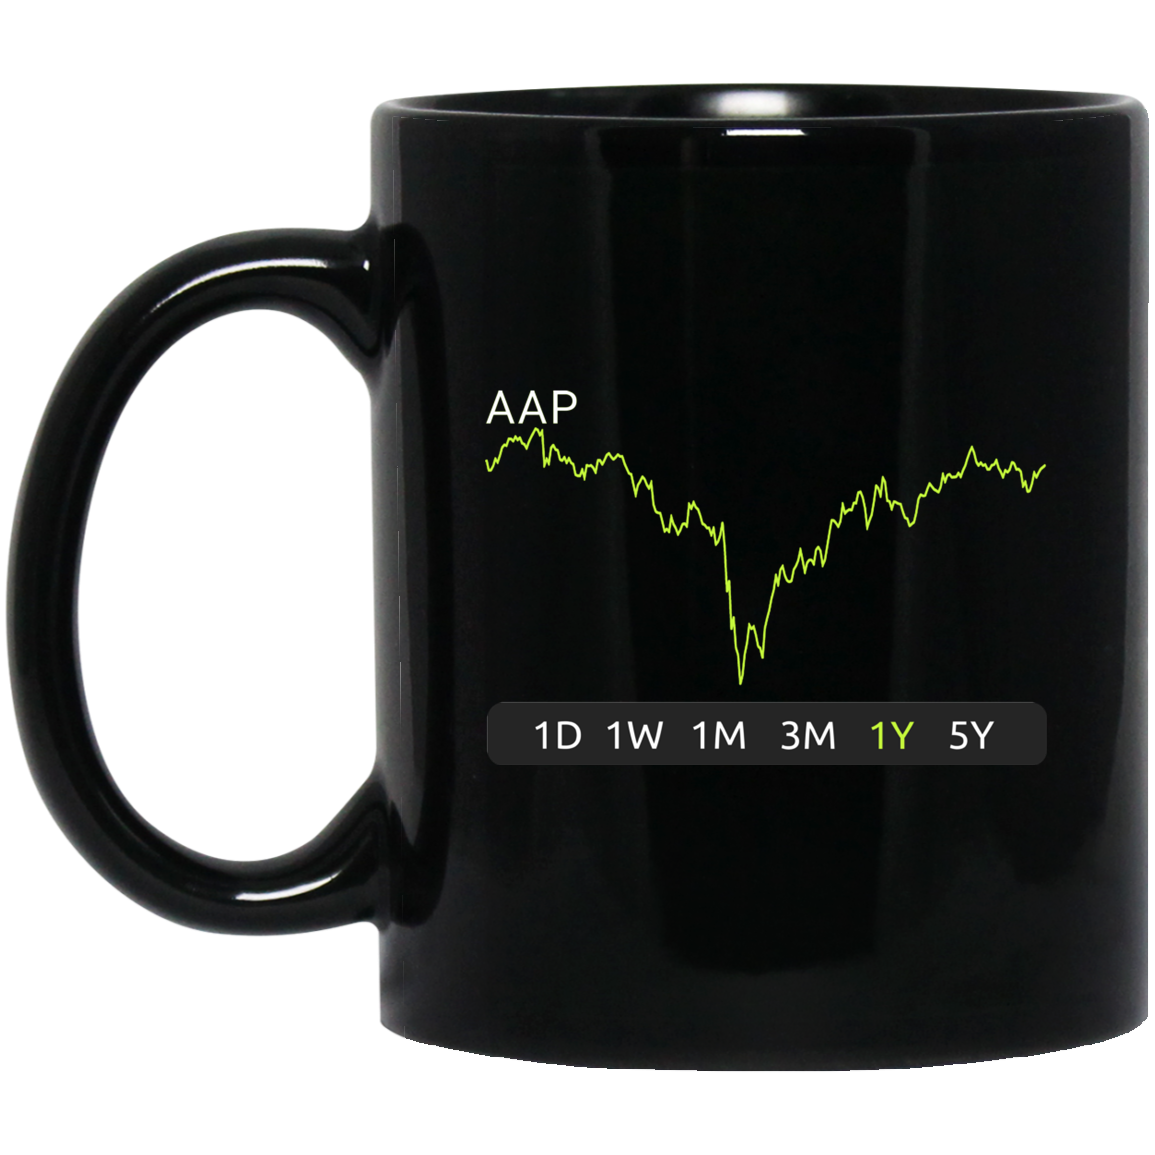 AAP Stock 1y Mug